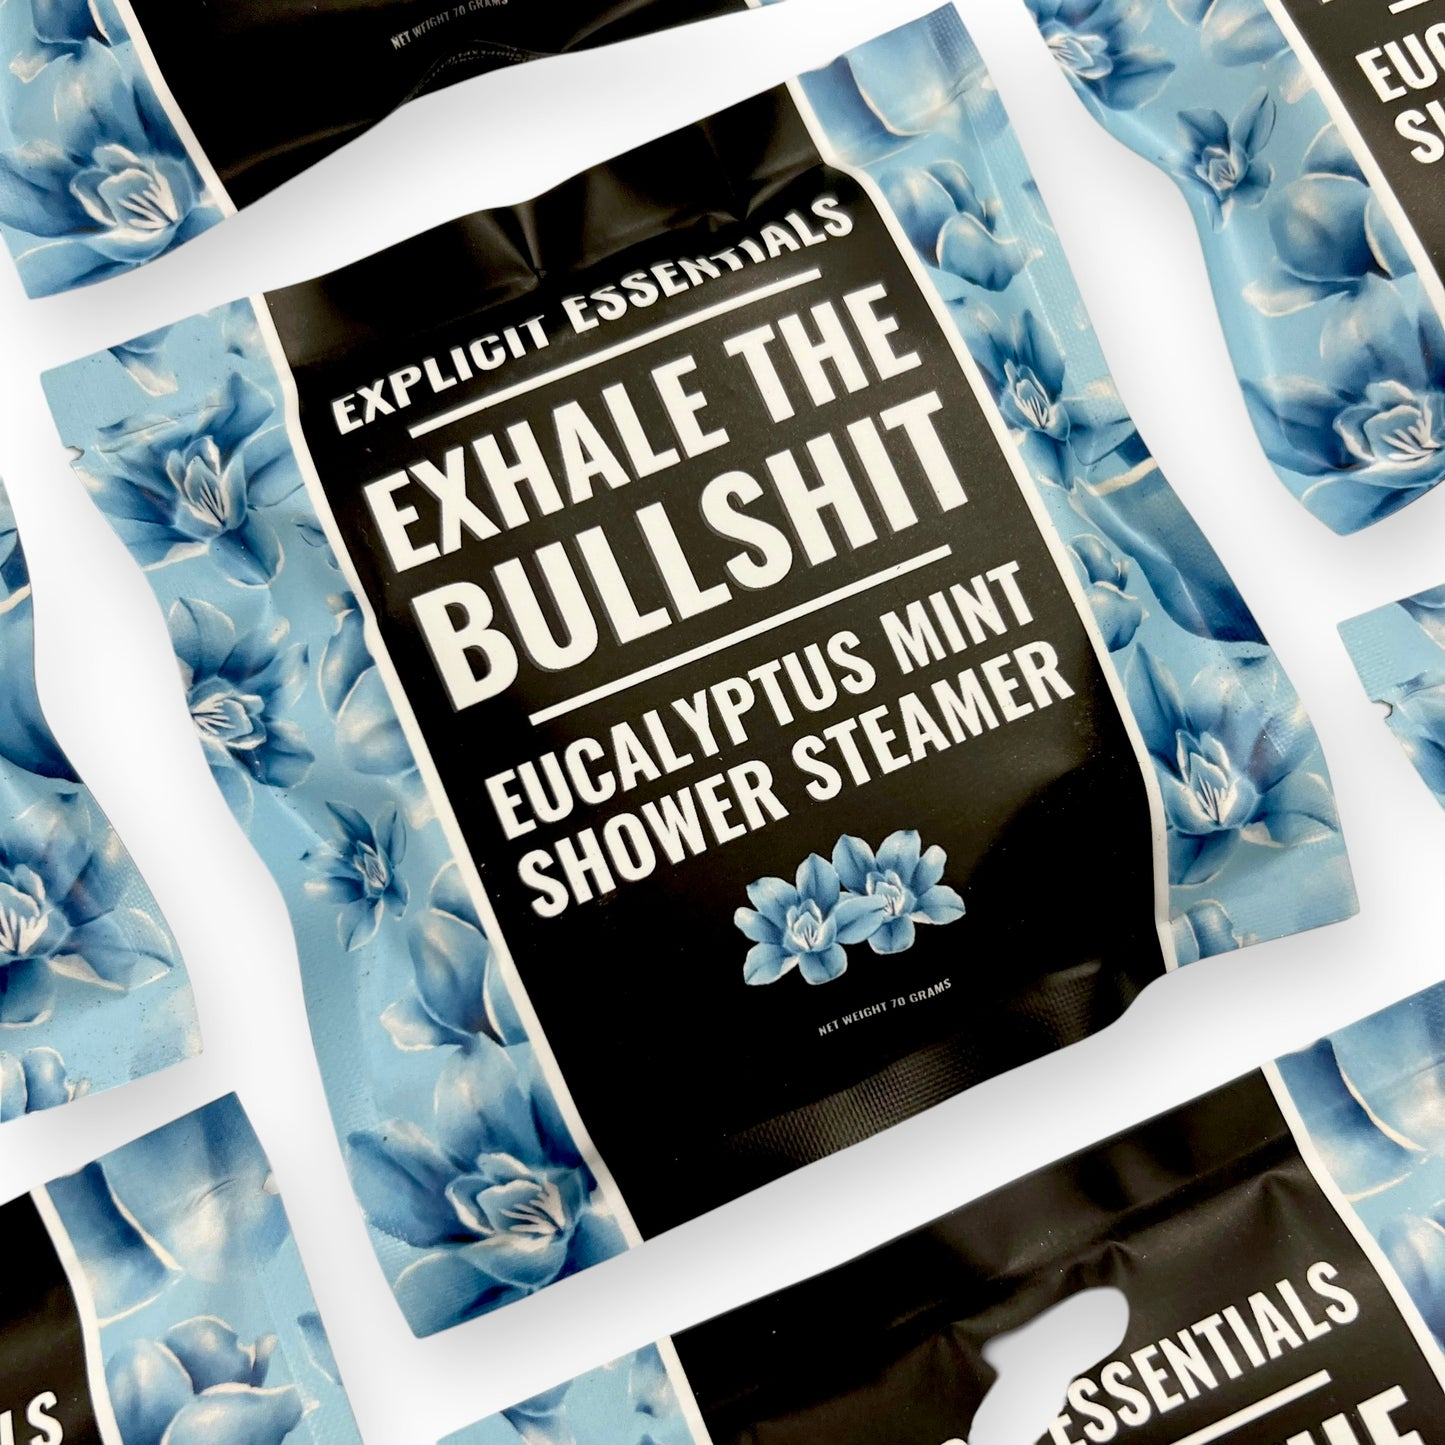 Exhale The Bullshit Shower Puck